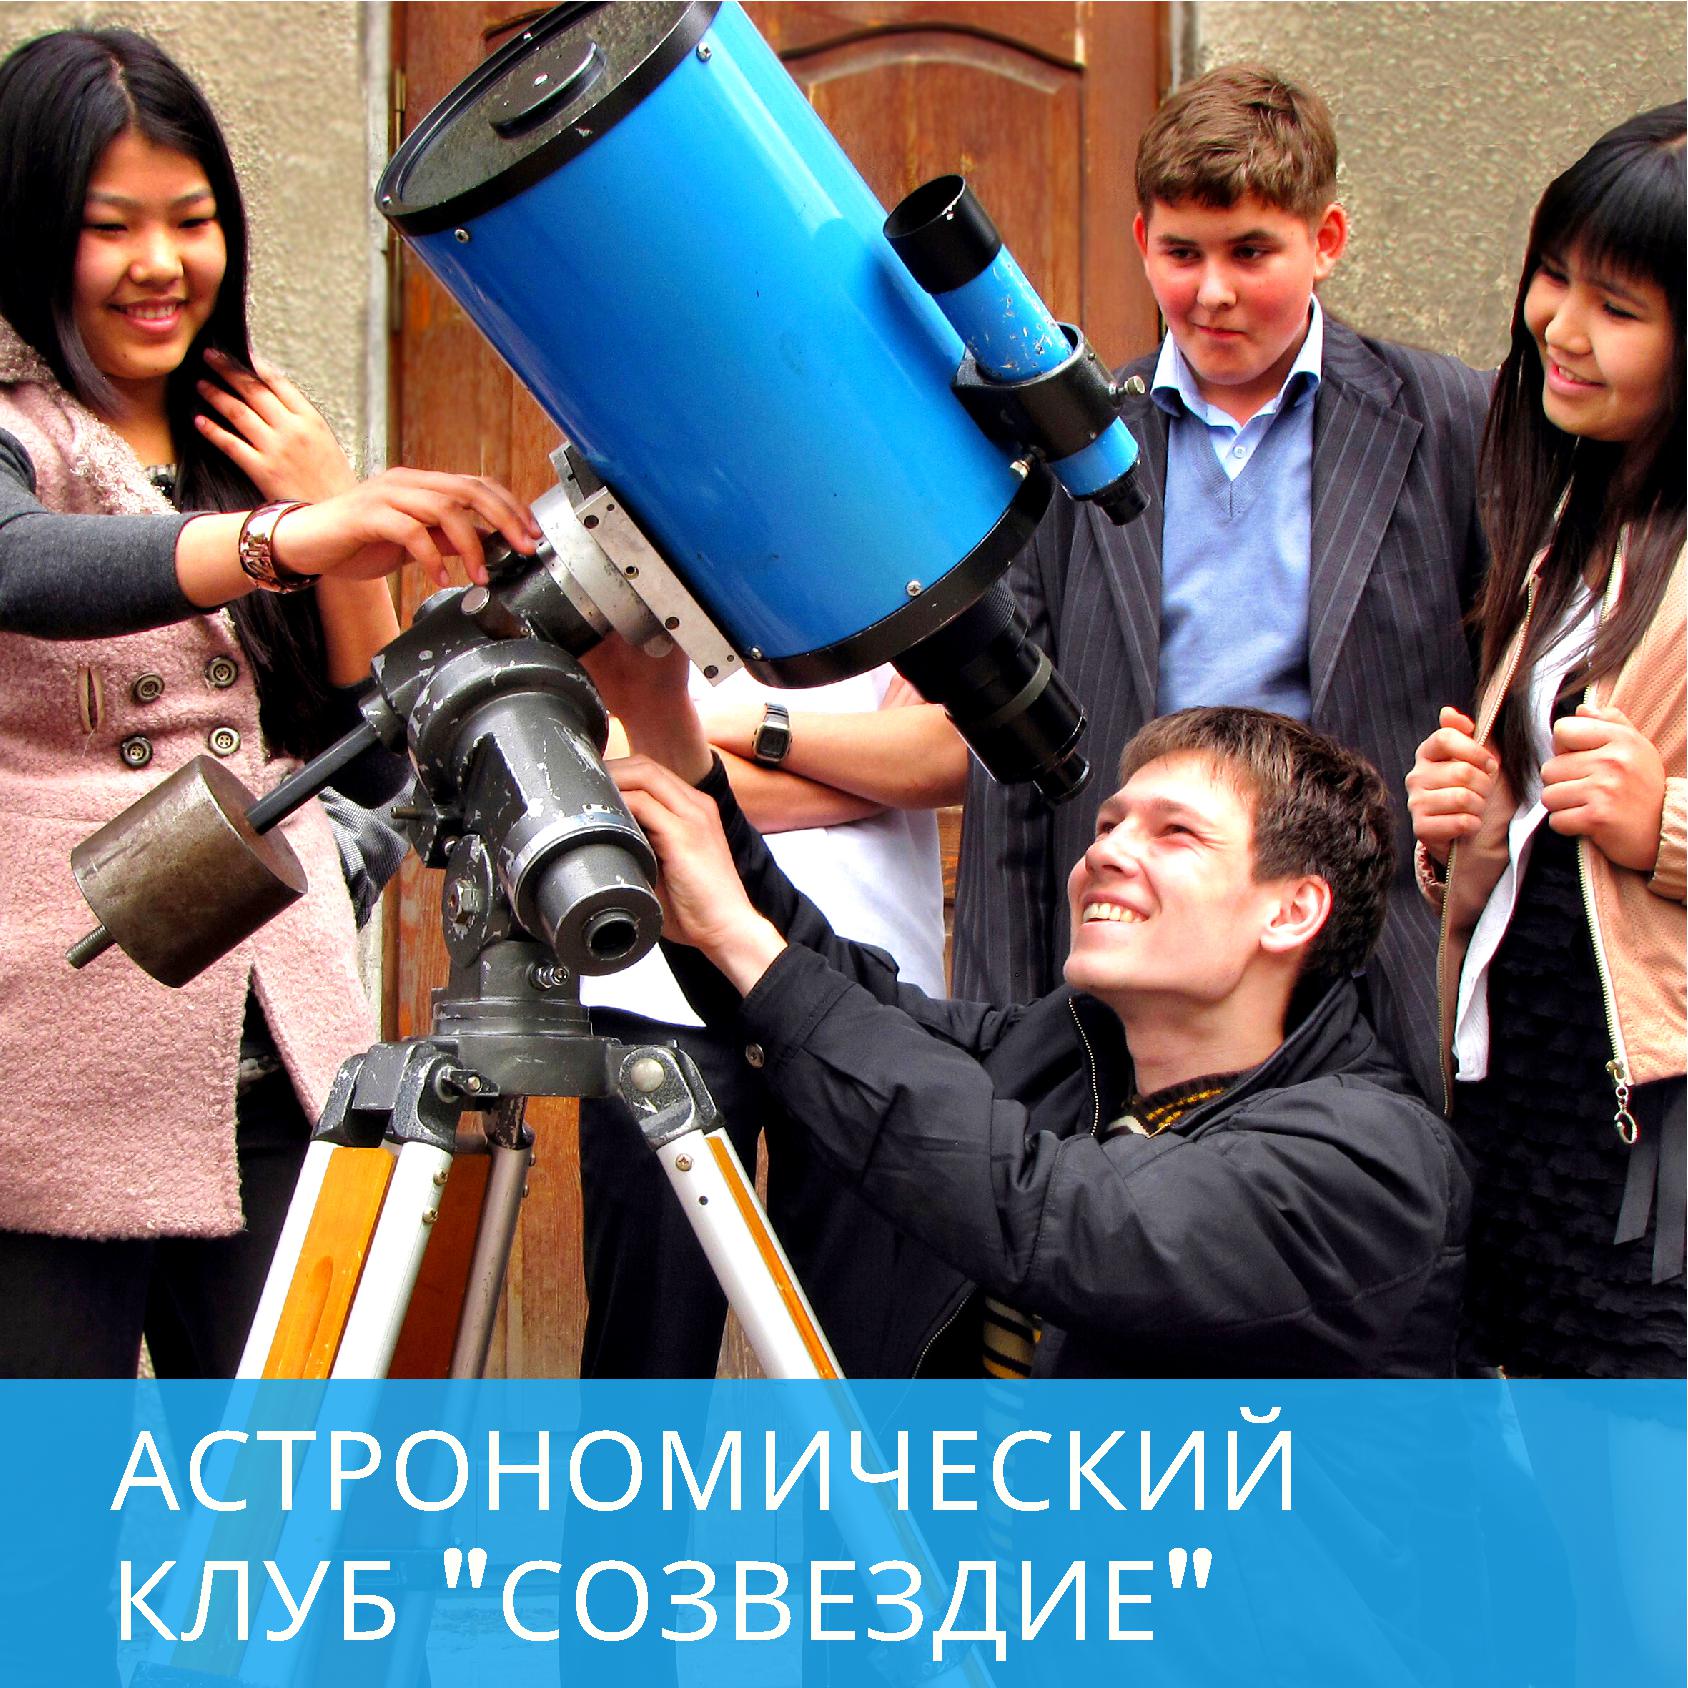 Астрономический клуб "Созвездие"